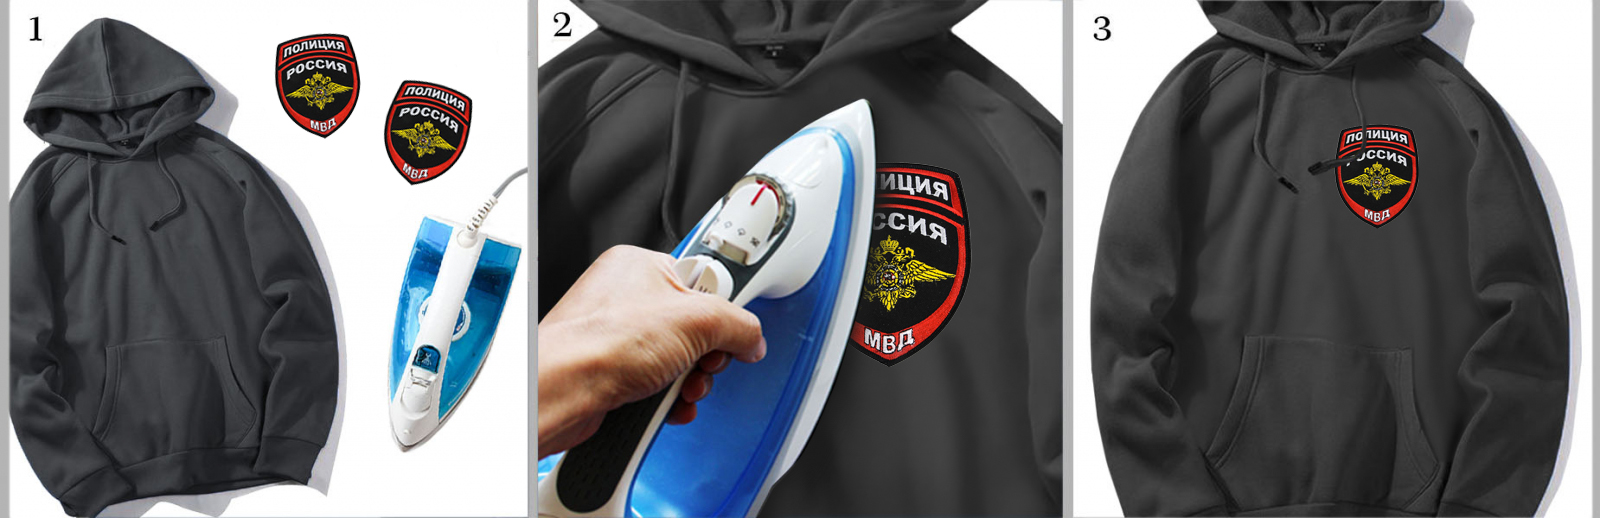 Купить в интернет магазине шеврон на клеевой основе с символикой Полиции России